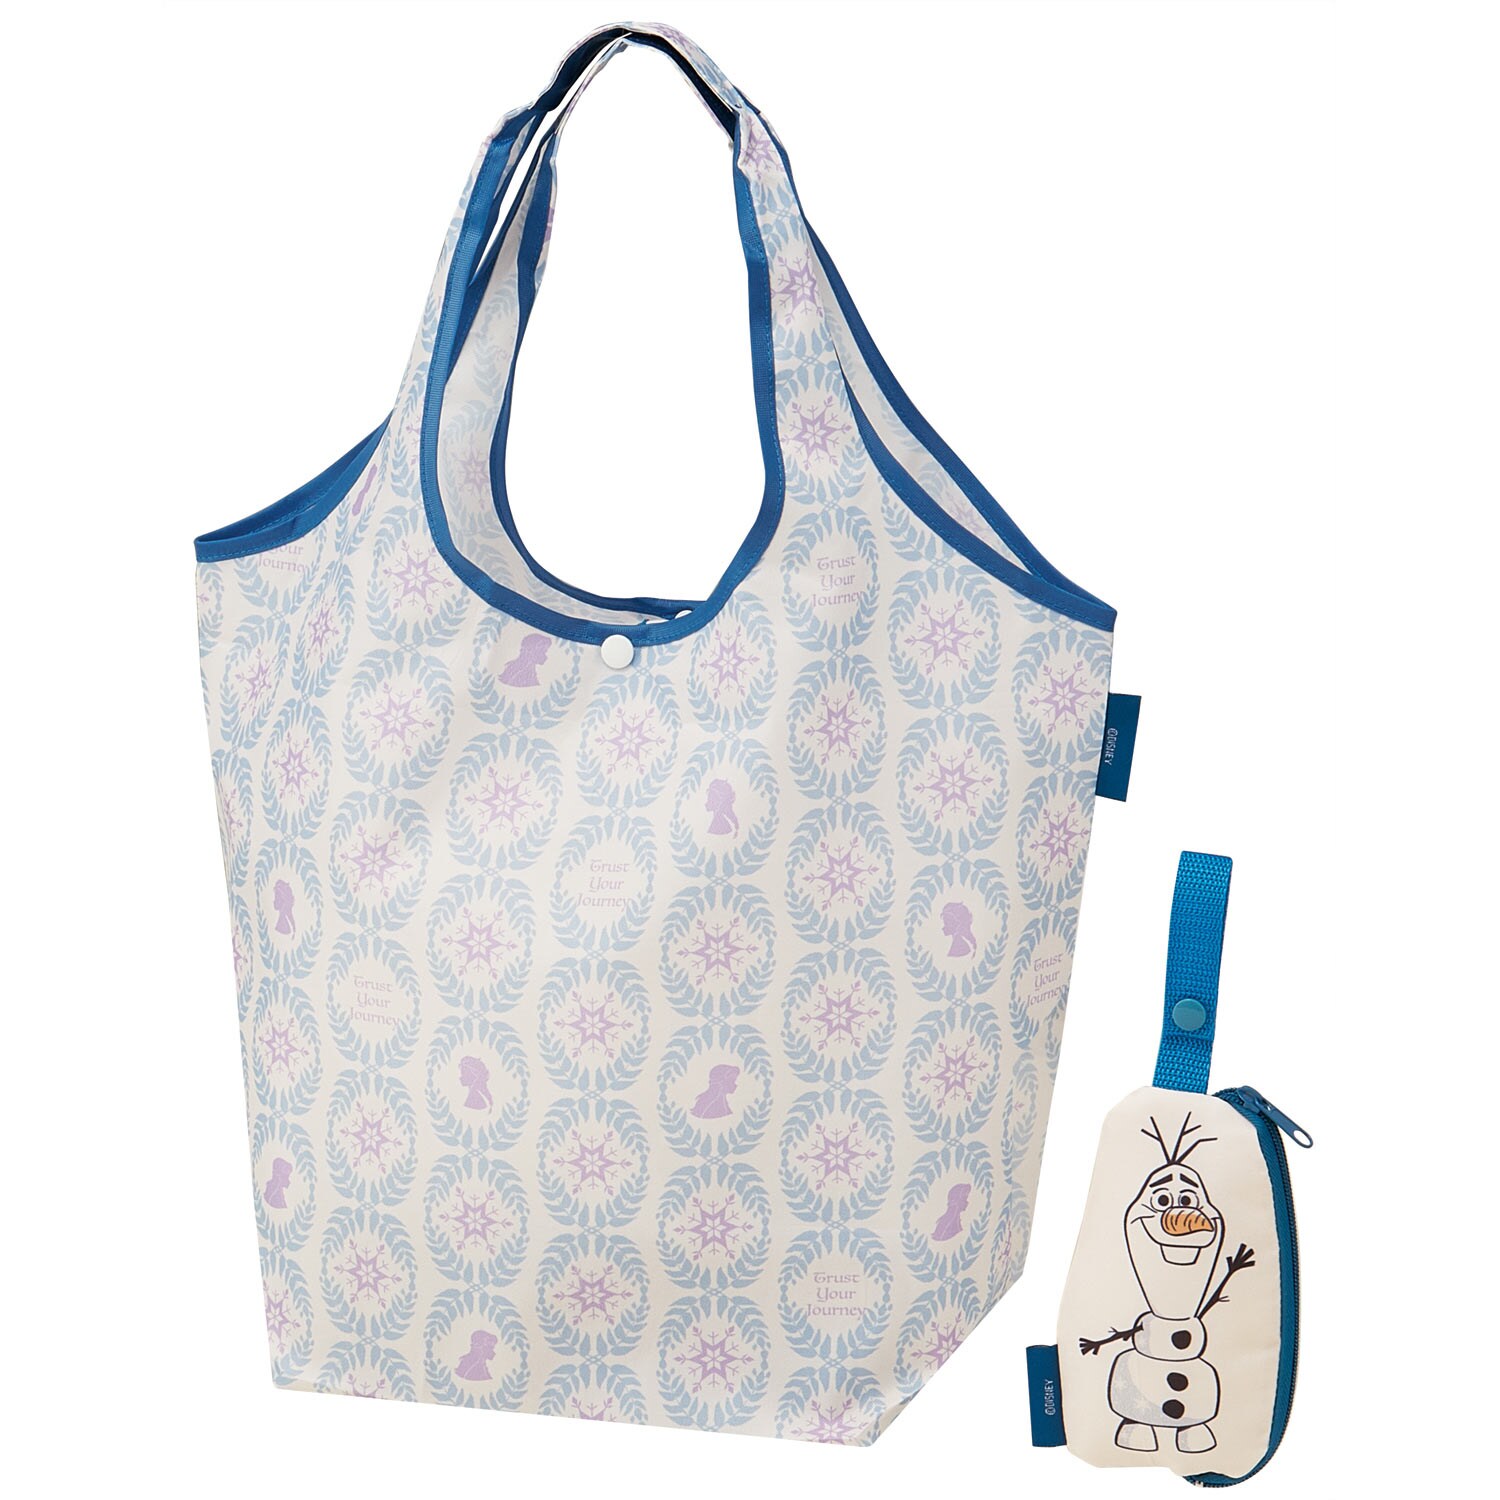 【ディズニー/Disney】かばんに付けられるポーチ付き ショッピングバッグ(選べるキャラクター)